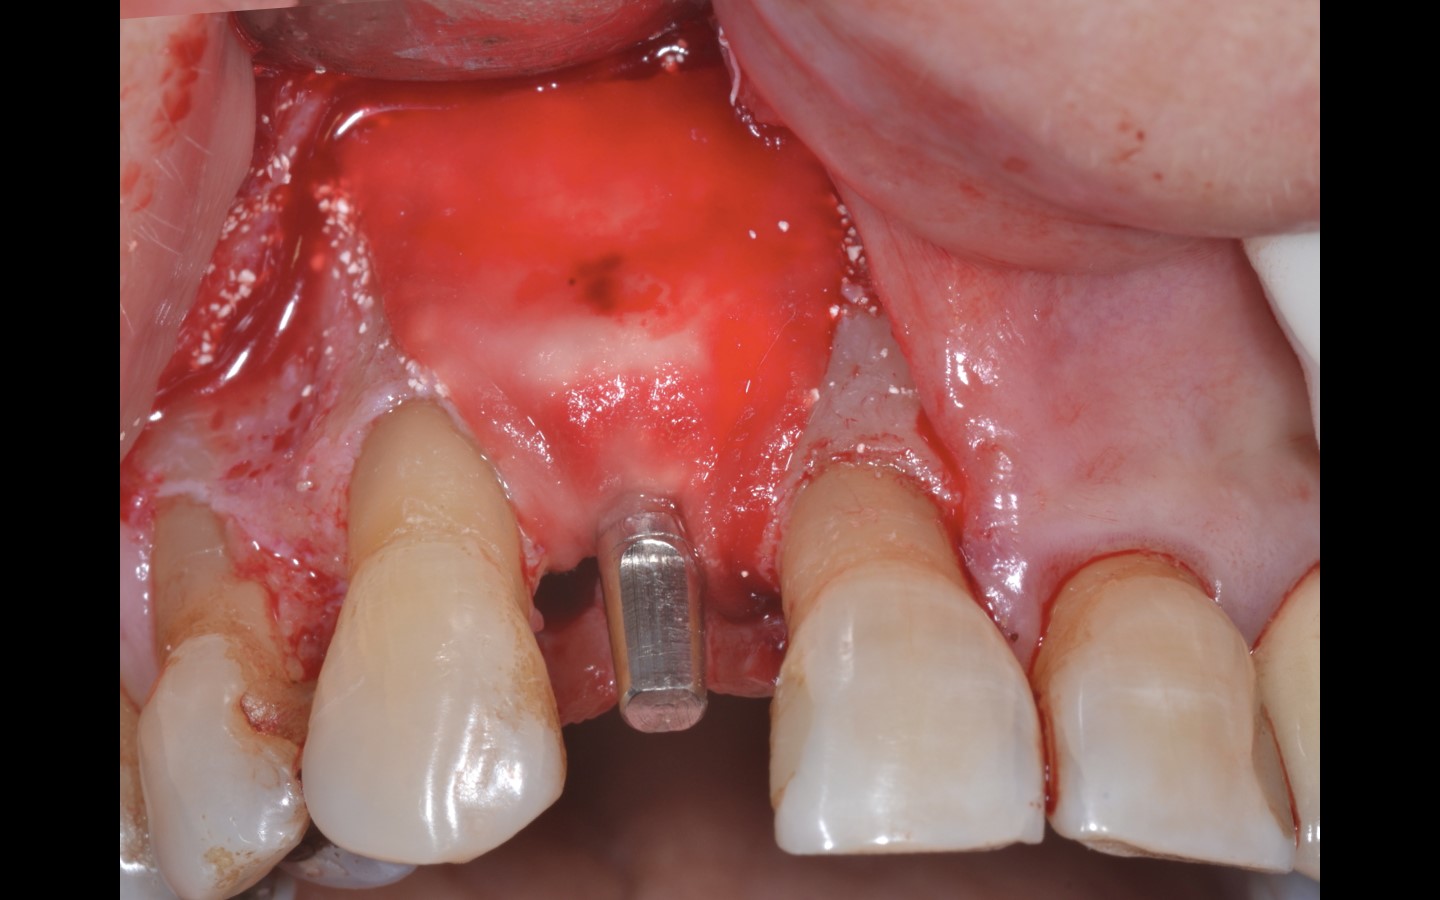 image13 - Reabilitação dento-alveolar com implante Arcsys, enxerto conjuntivo e substituto ósseo Nanosynt